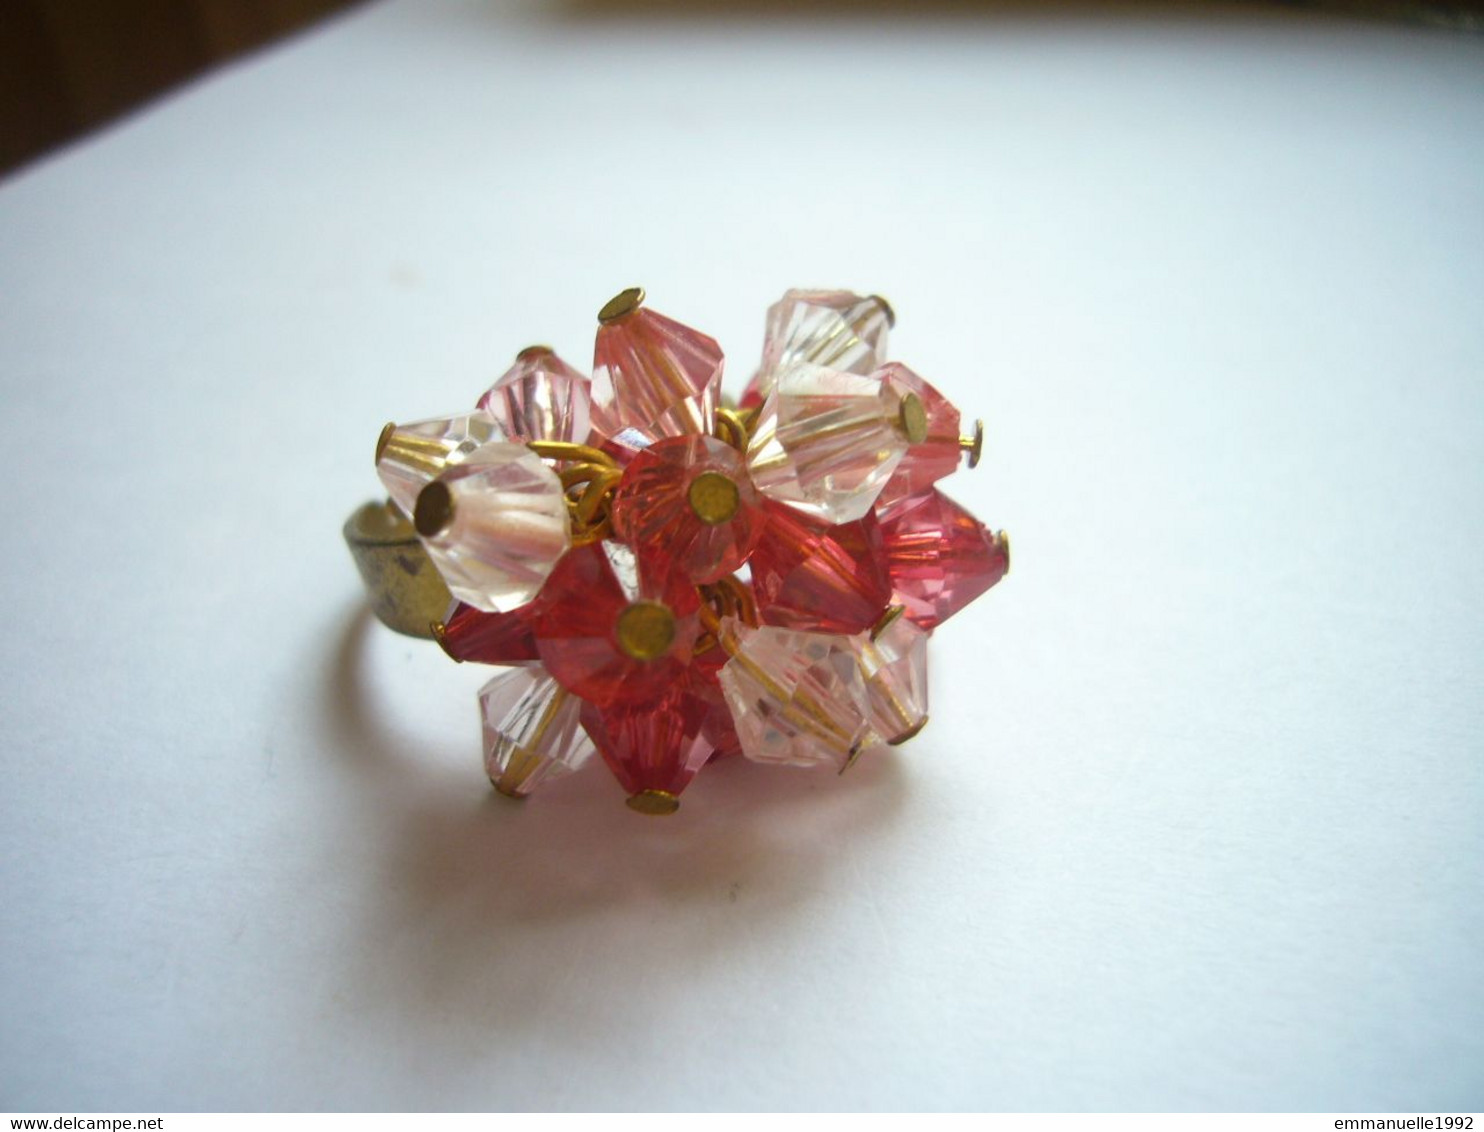 Vintage - Bague pompon réglable et 3 bracelets cristaux fantaisie rouge rose bracelet